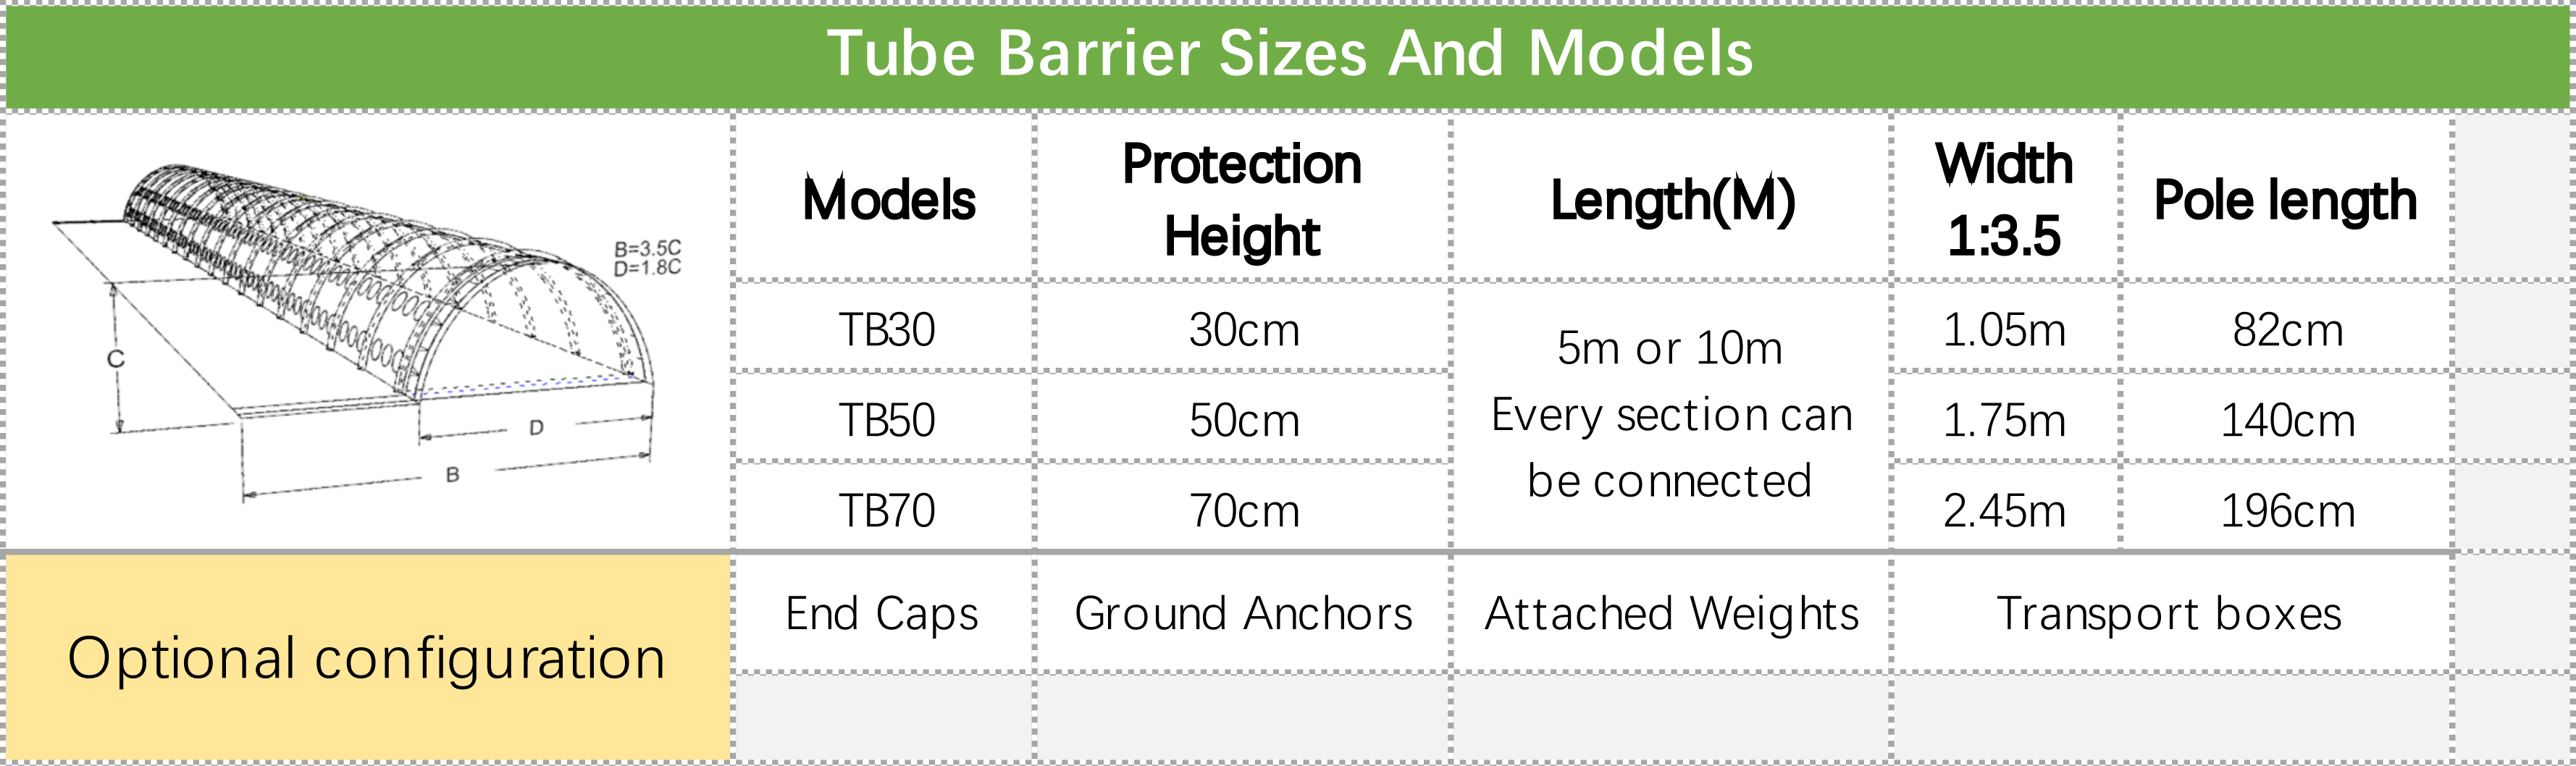 Tube Barrier sizes